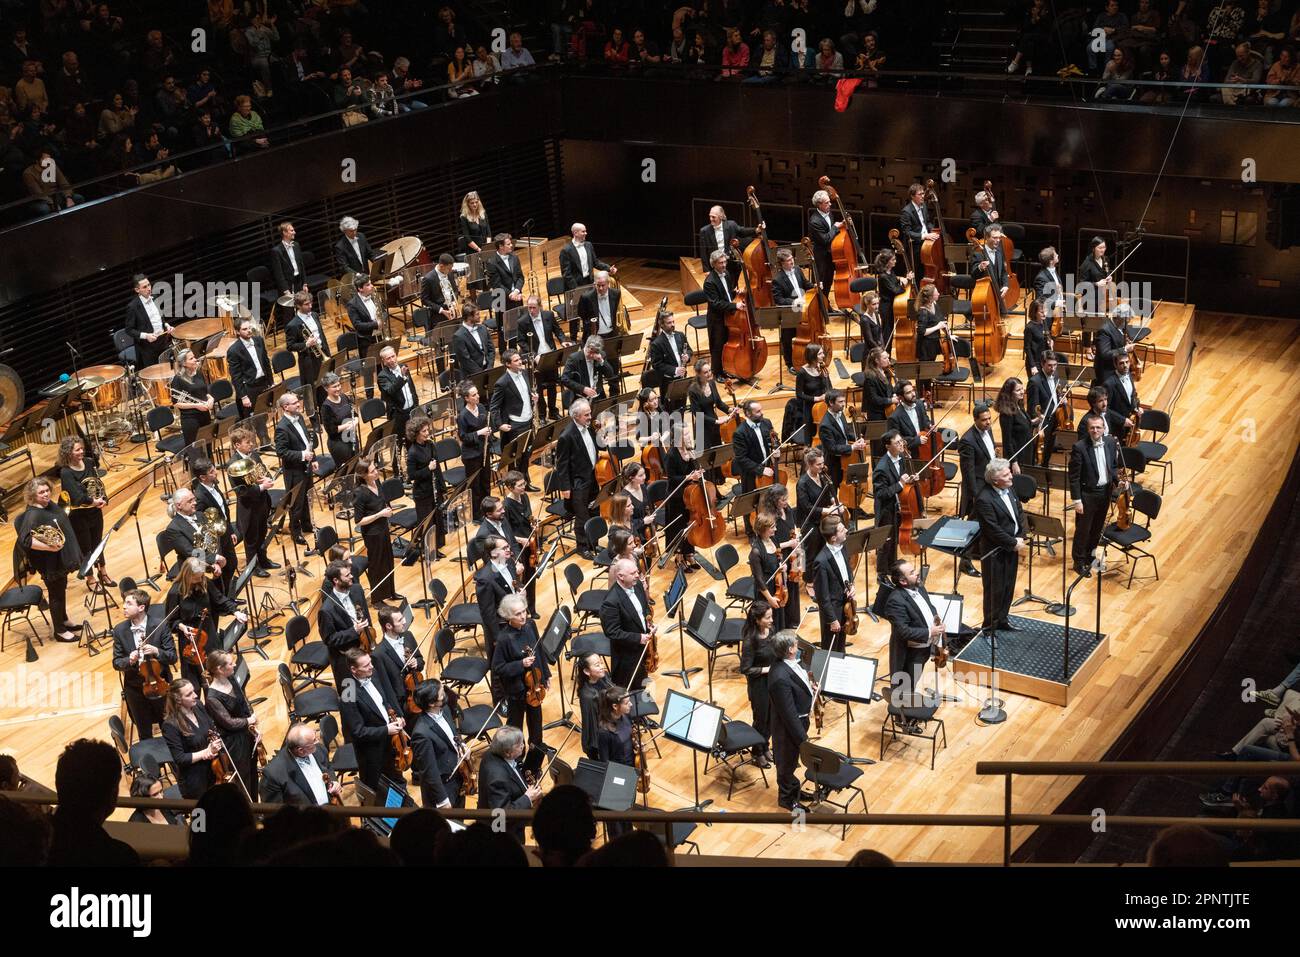 Dirigent Vassily Sinaisky und Orchester, die Applaus, klassisches Konzert, Philharmonie de Paris Konzerthalle, Paris, Frankreich anerkennen Stockfoto